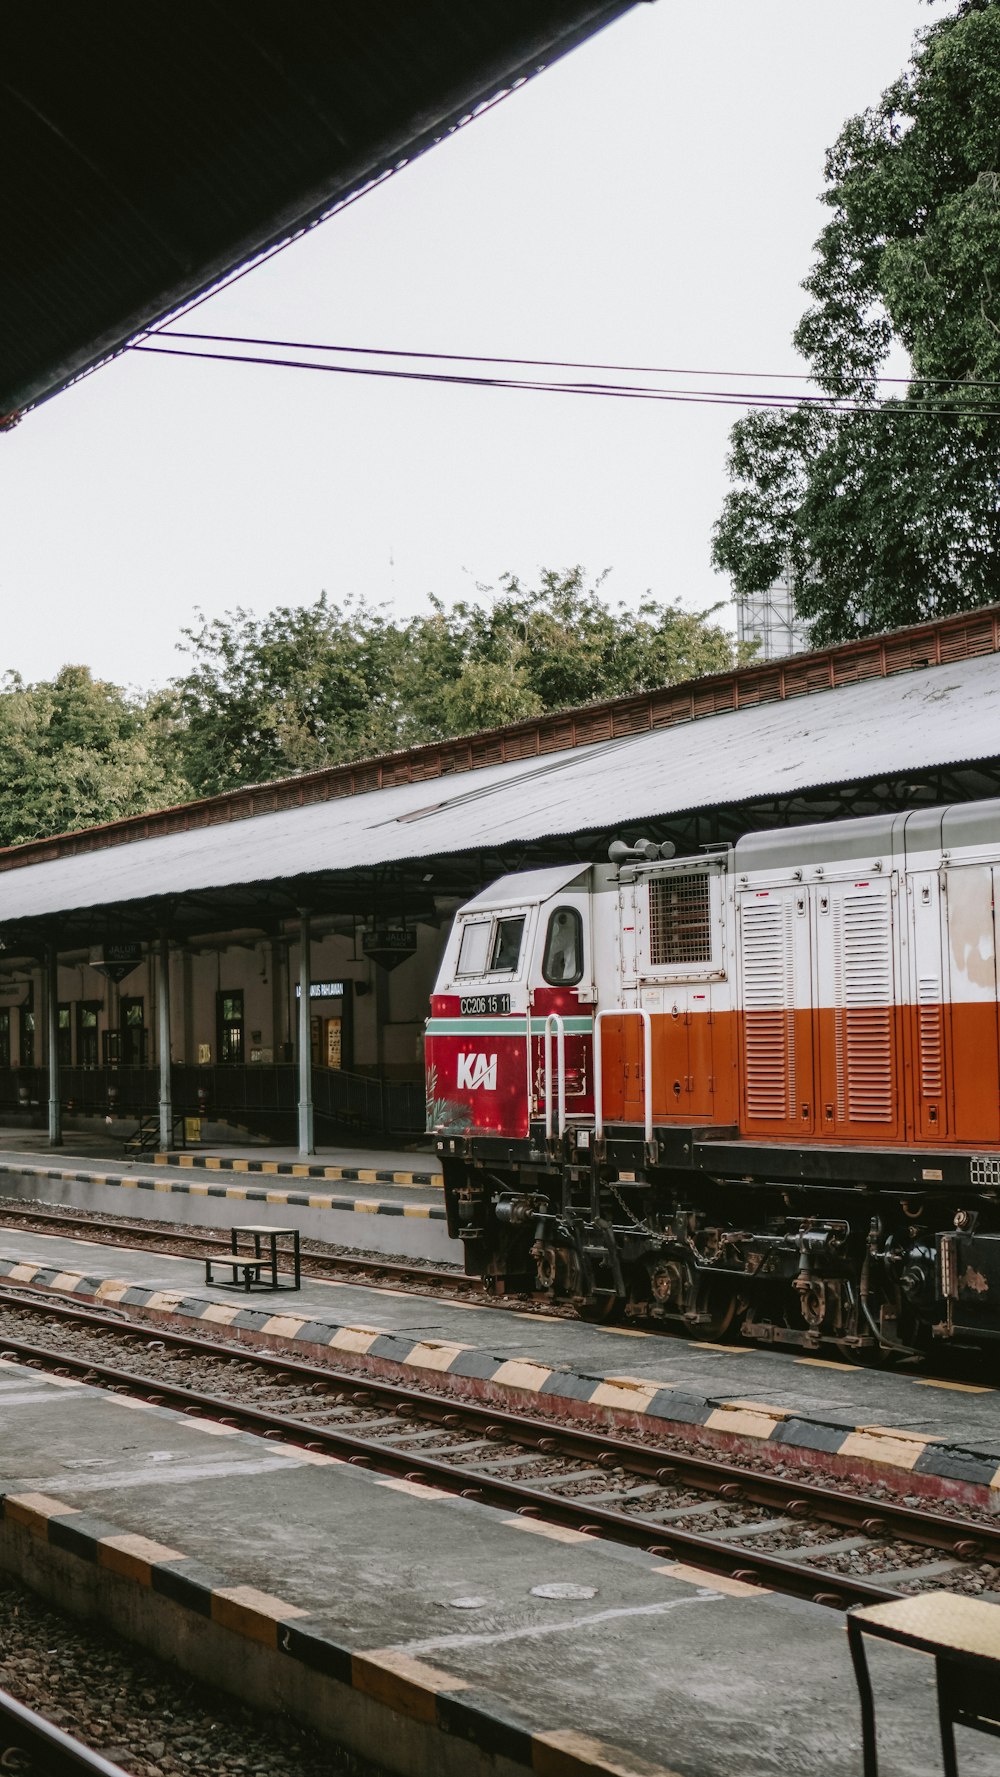 Un treno rosso e bianco che entra in una stazione ferroviaria